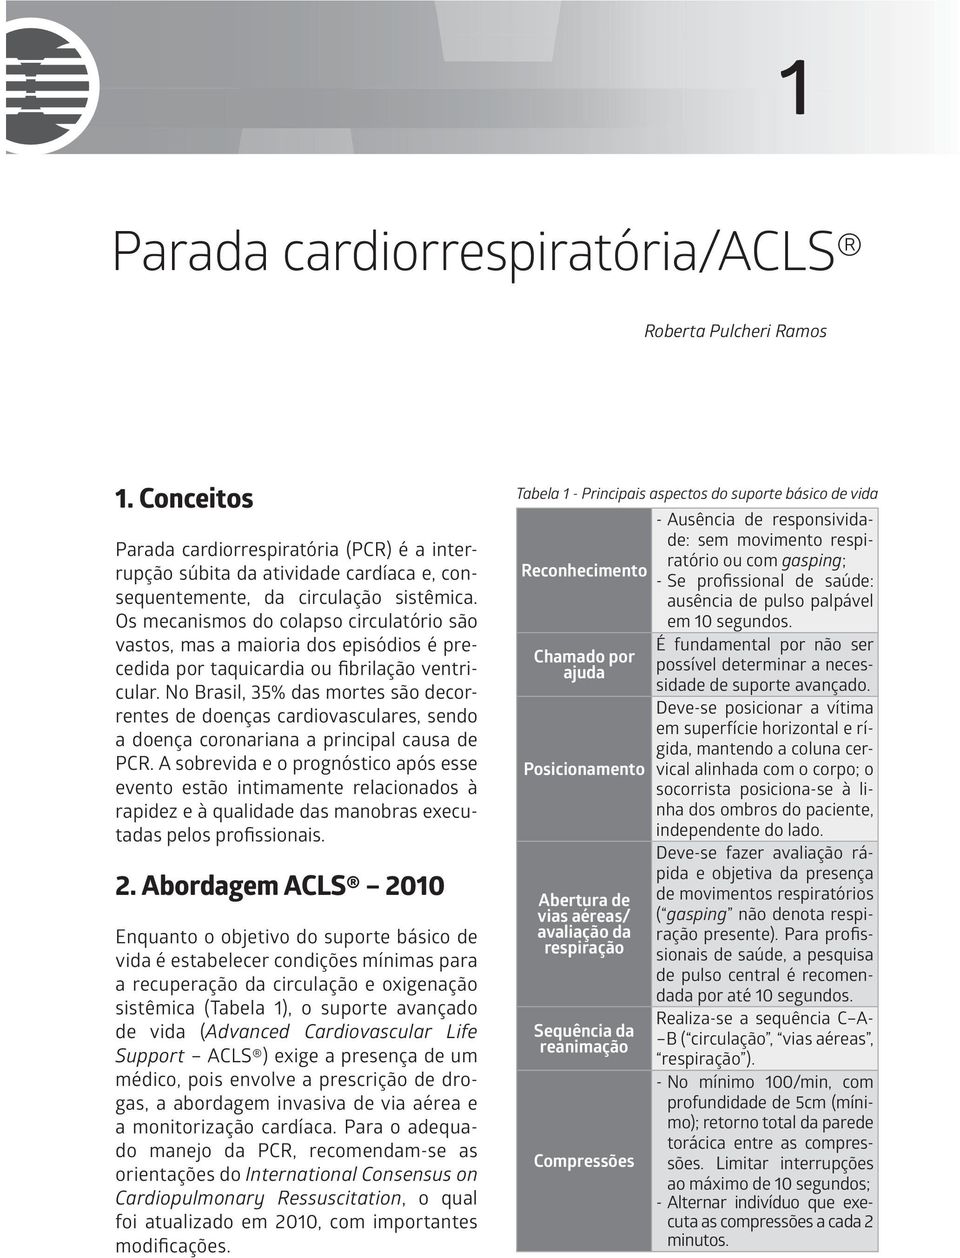 No Brasil, 35% das mortes são decorrentes de doenças cardiovasculares, sendo a doença coronariana a principal causa de PCR.